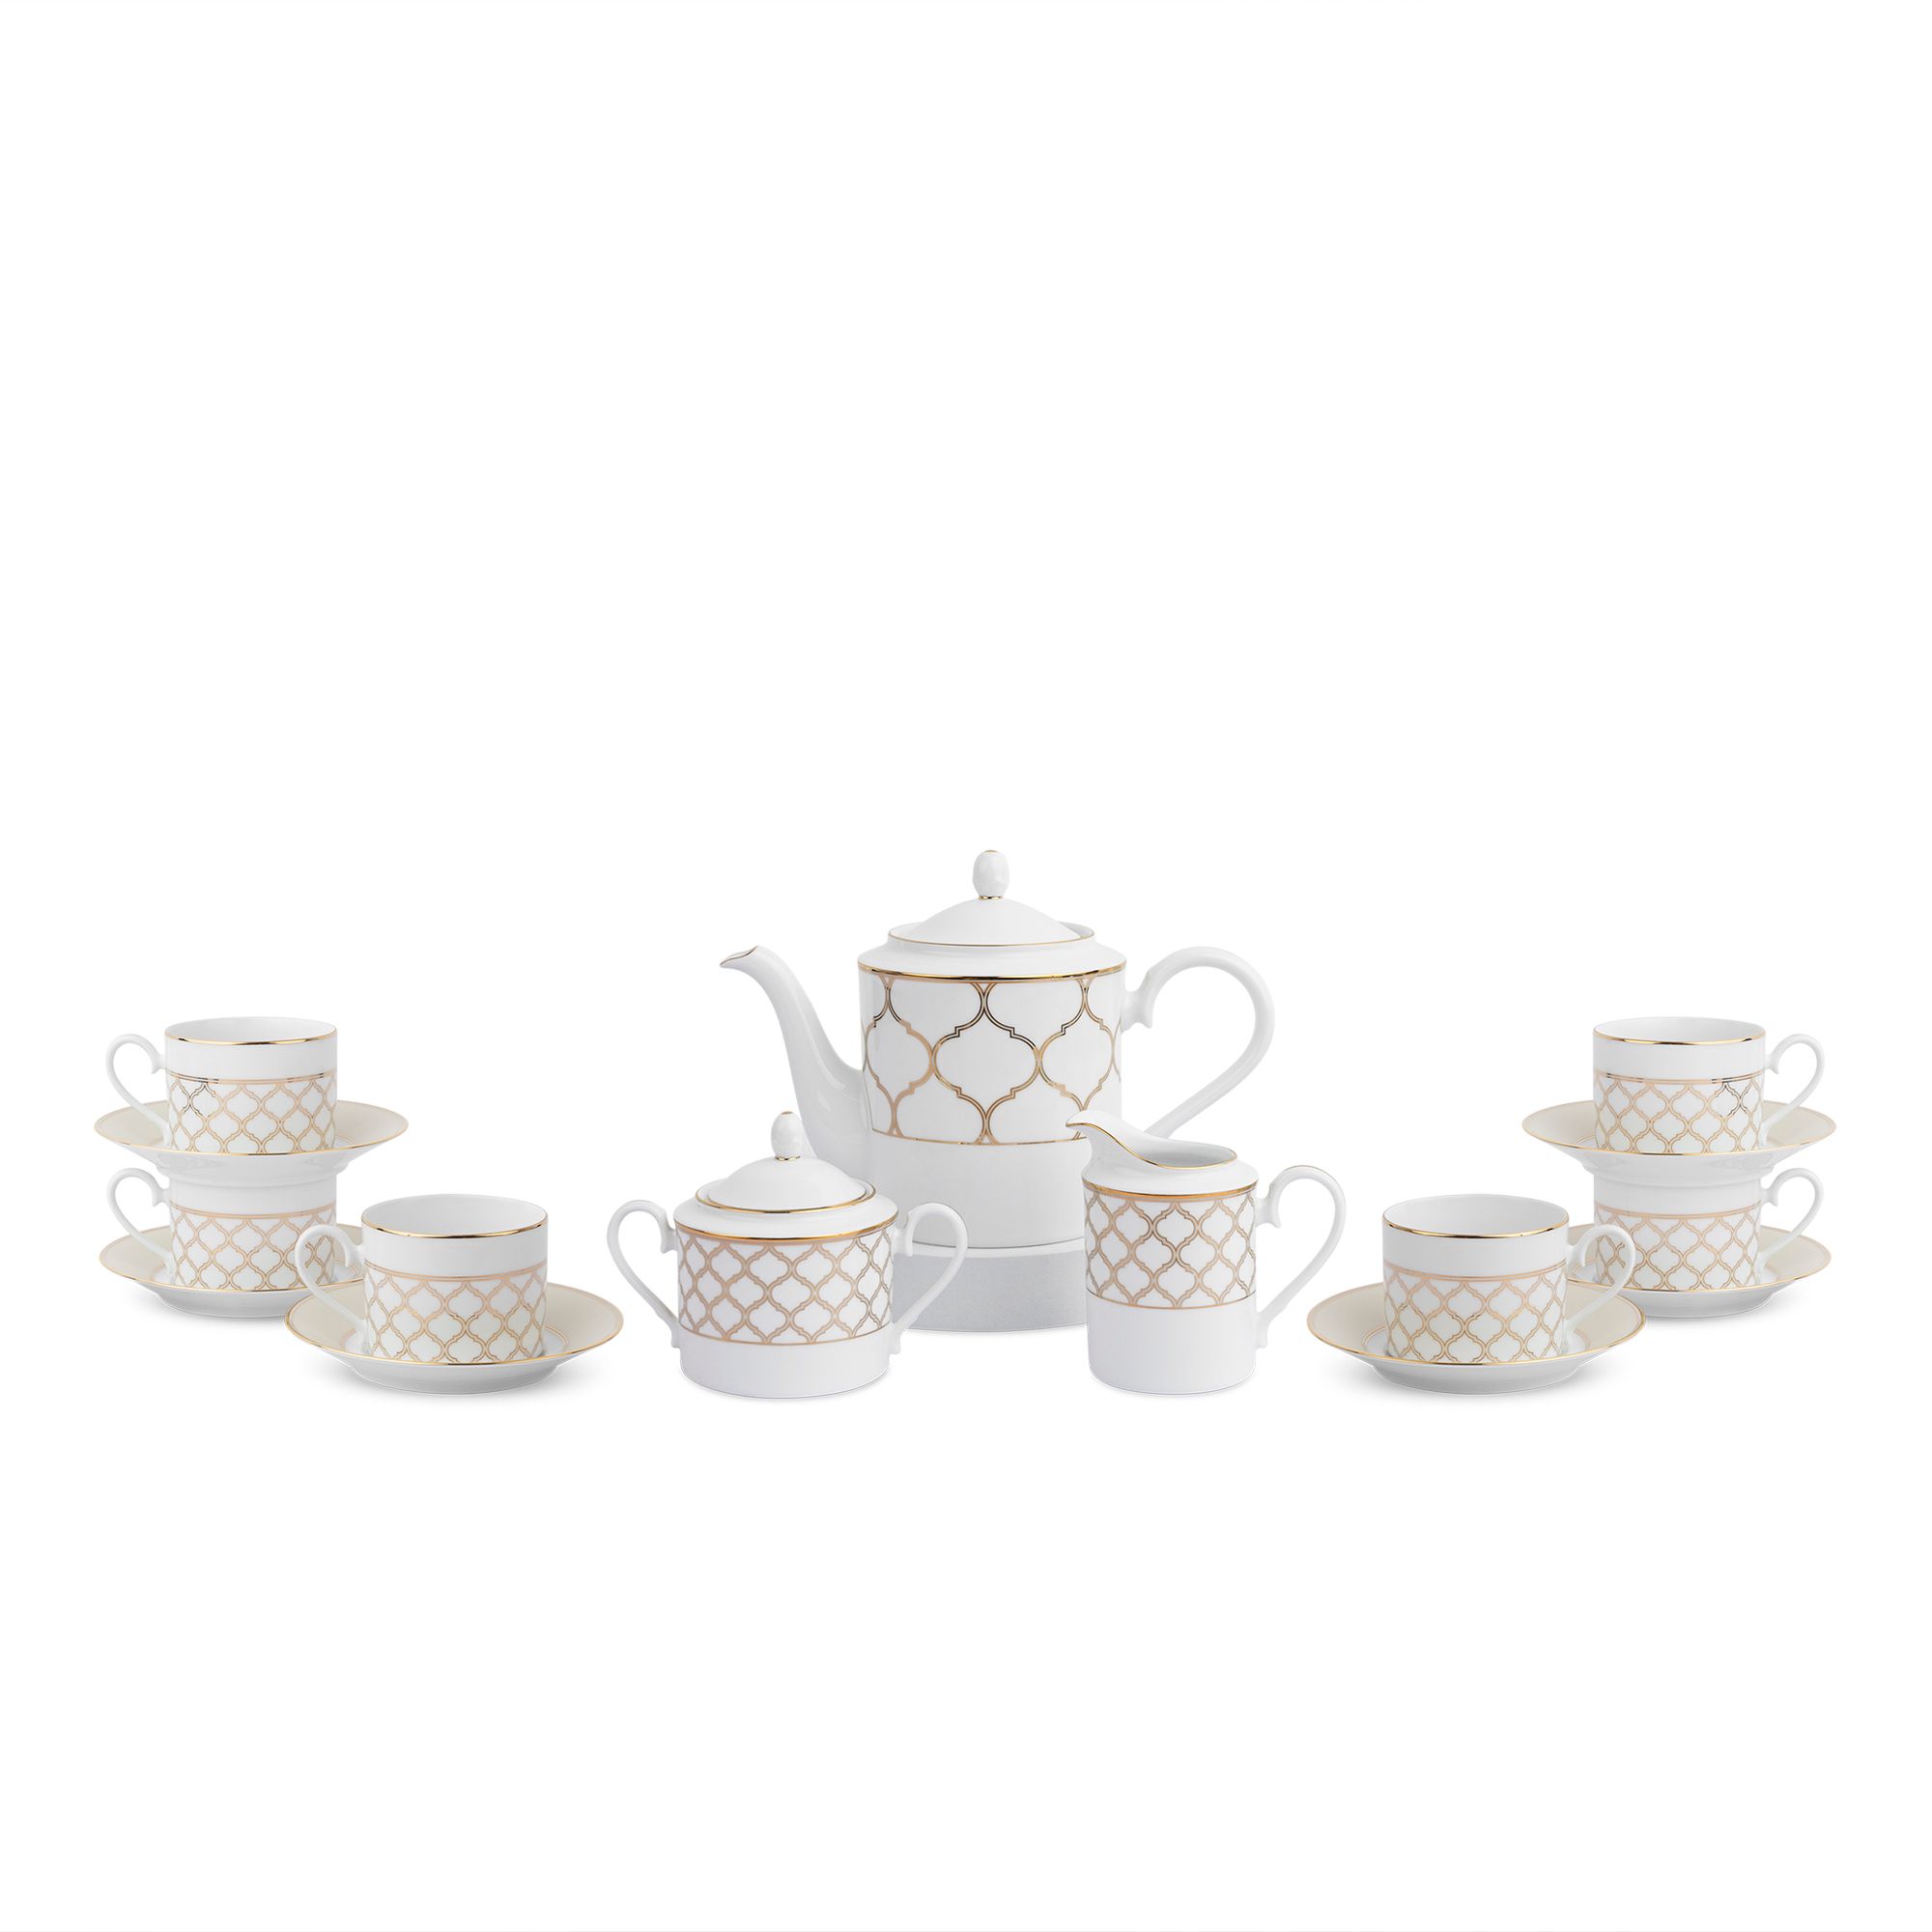  Bộ ấm chén uống trà 15 món (bình trà 1.500ml, tách trà 250ml) sứ trắng | Eternal Palace Gold 1728L 